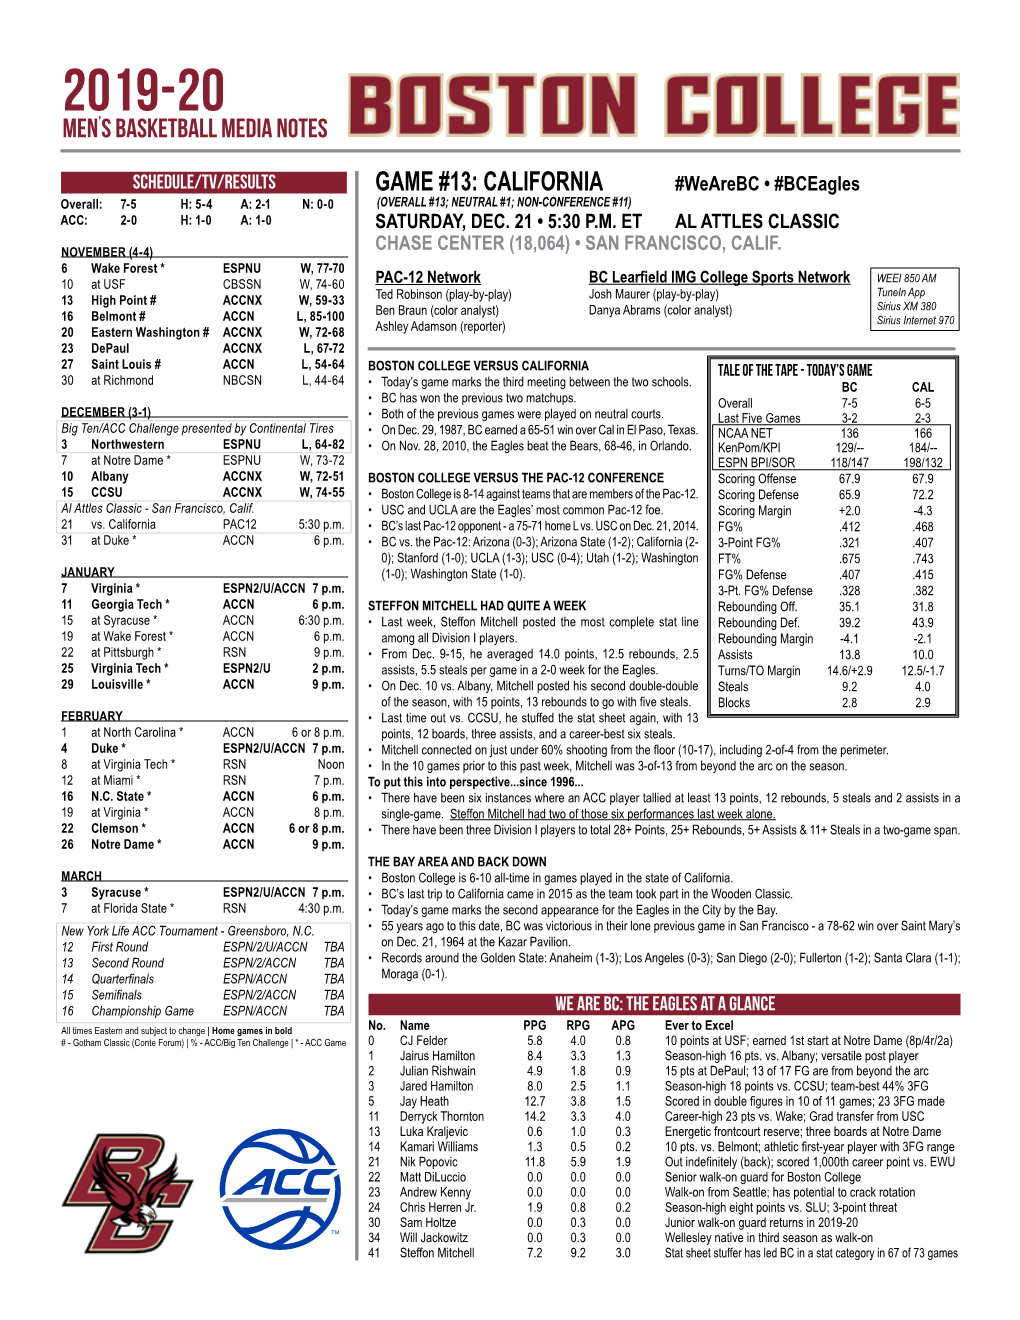 Game #13: California Men's Basketball Media Notes